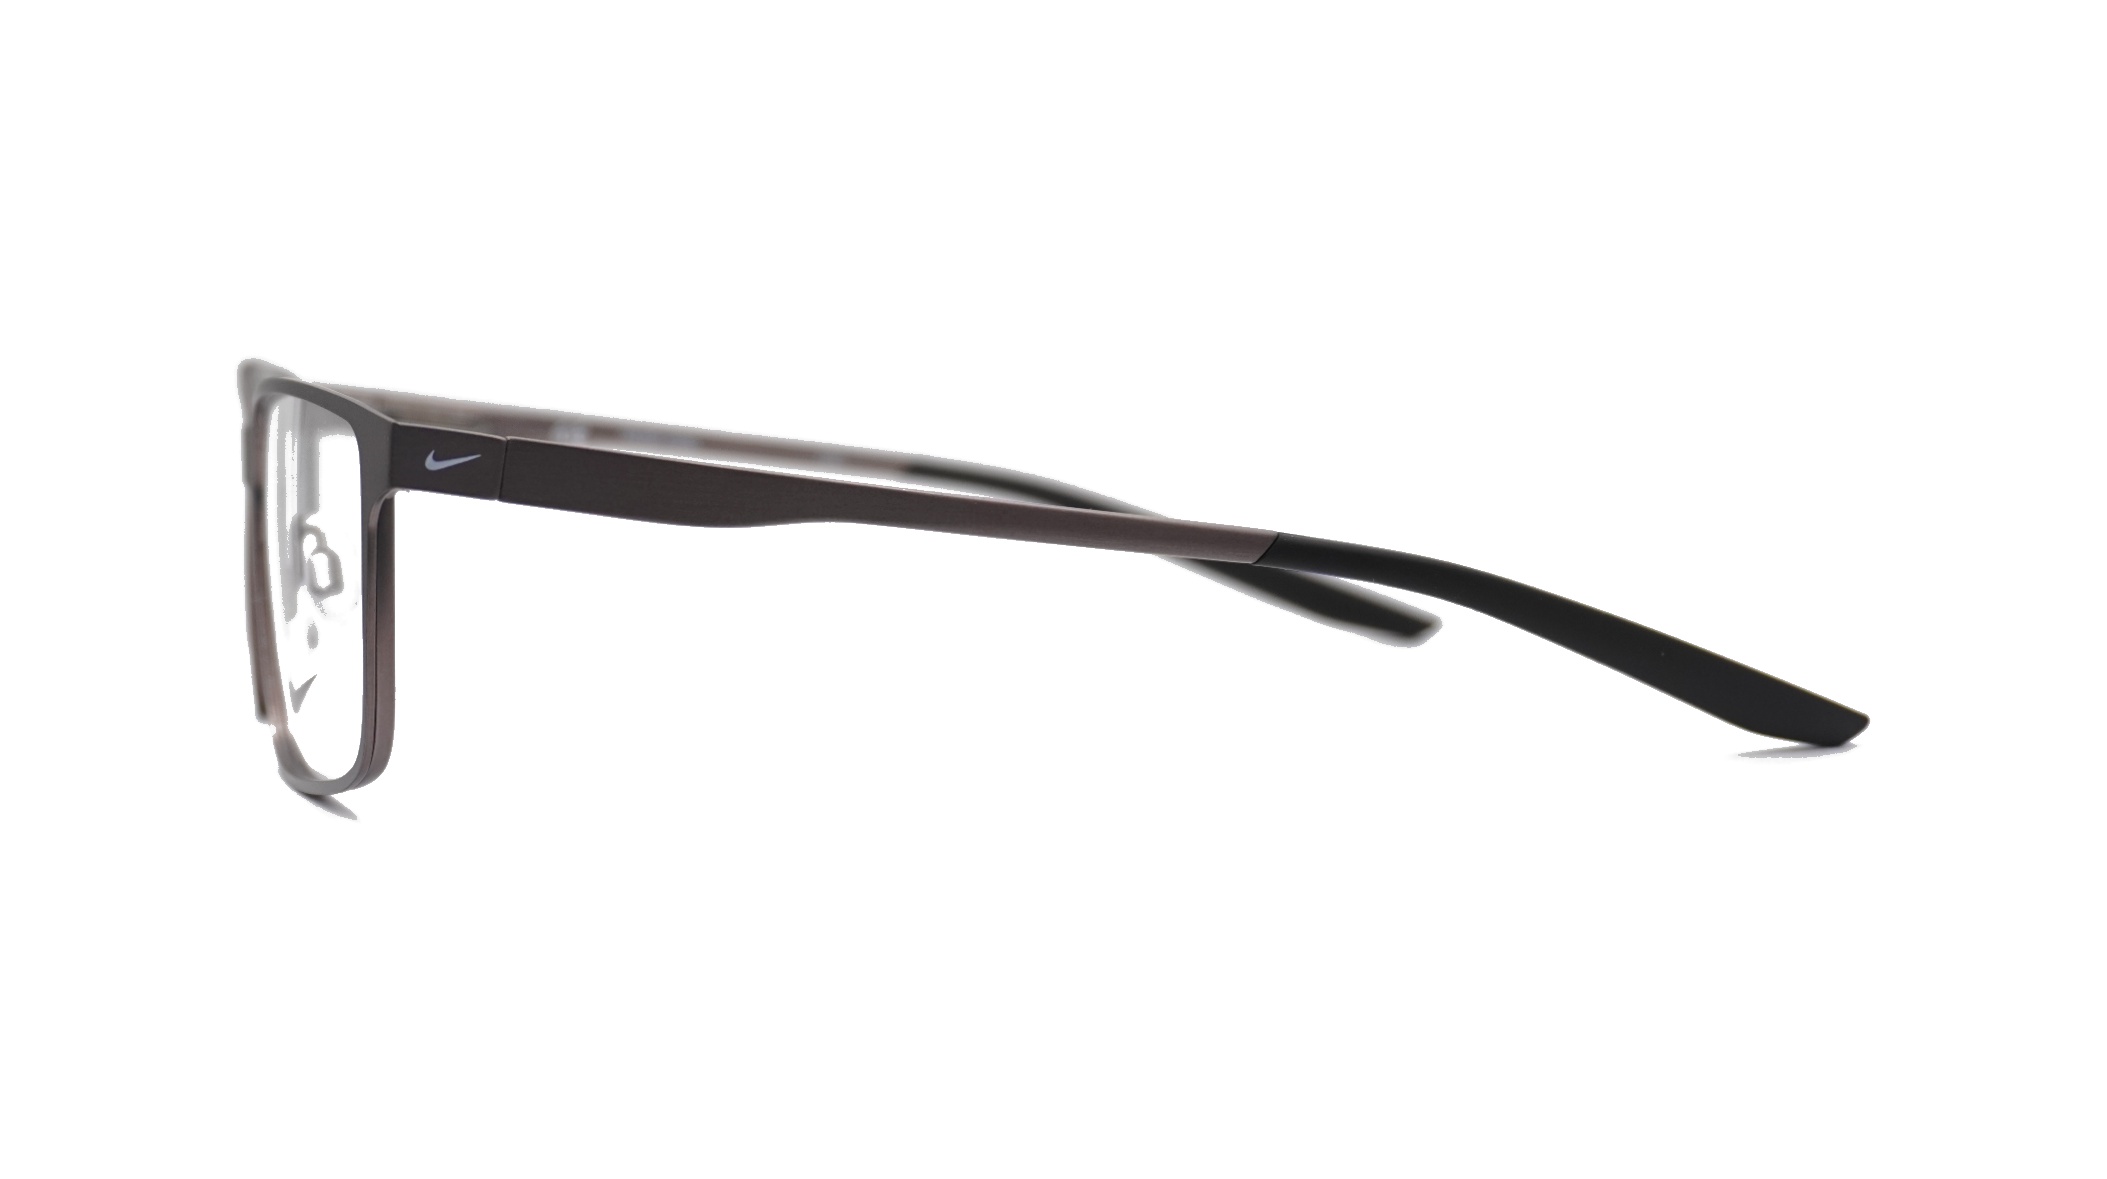 Paire de lunettes de vue Nike 8046 couleur bronze - Côté droit - Doyle